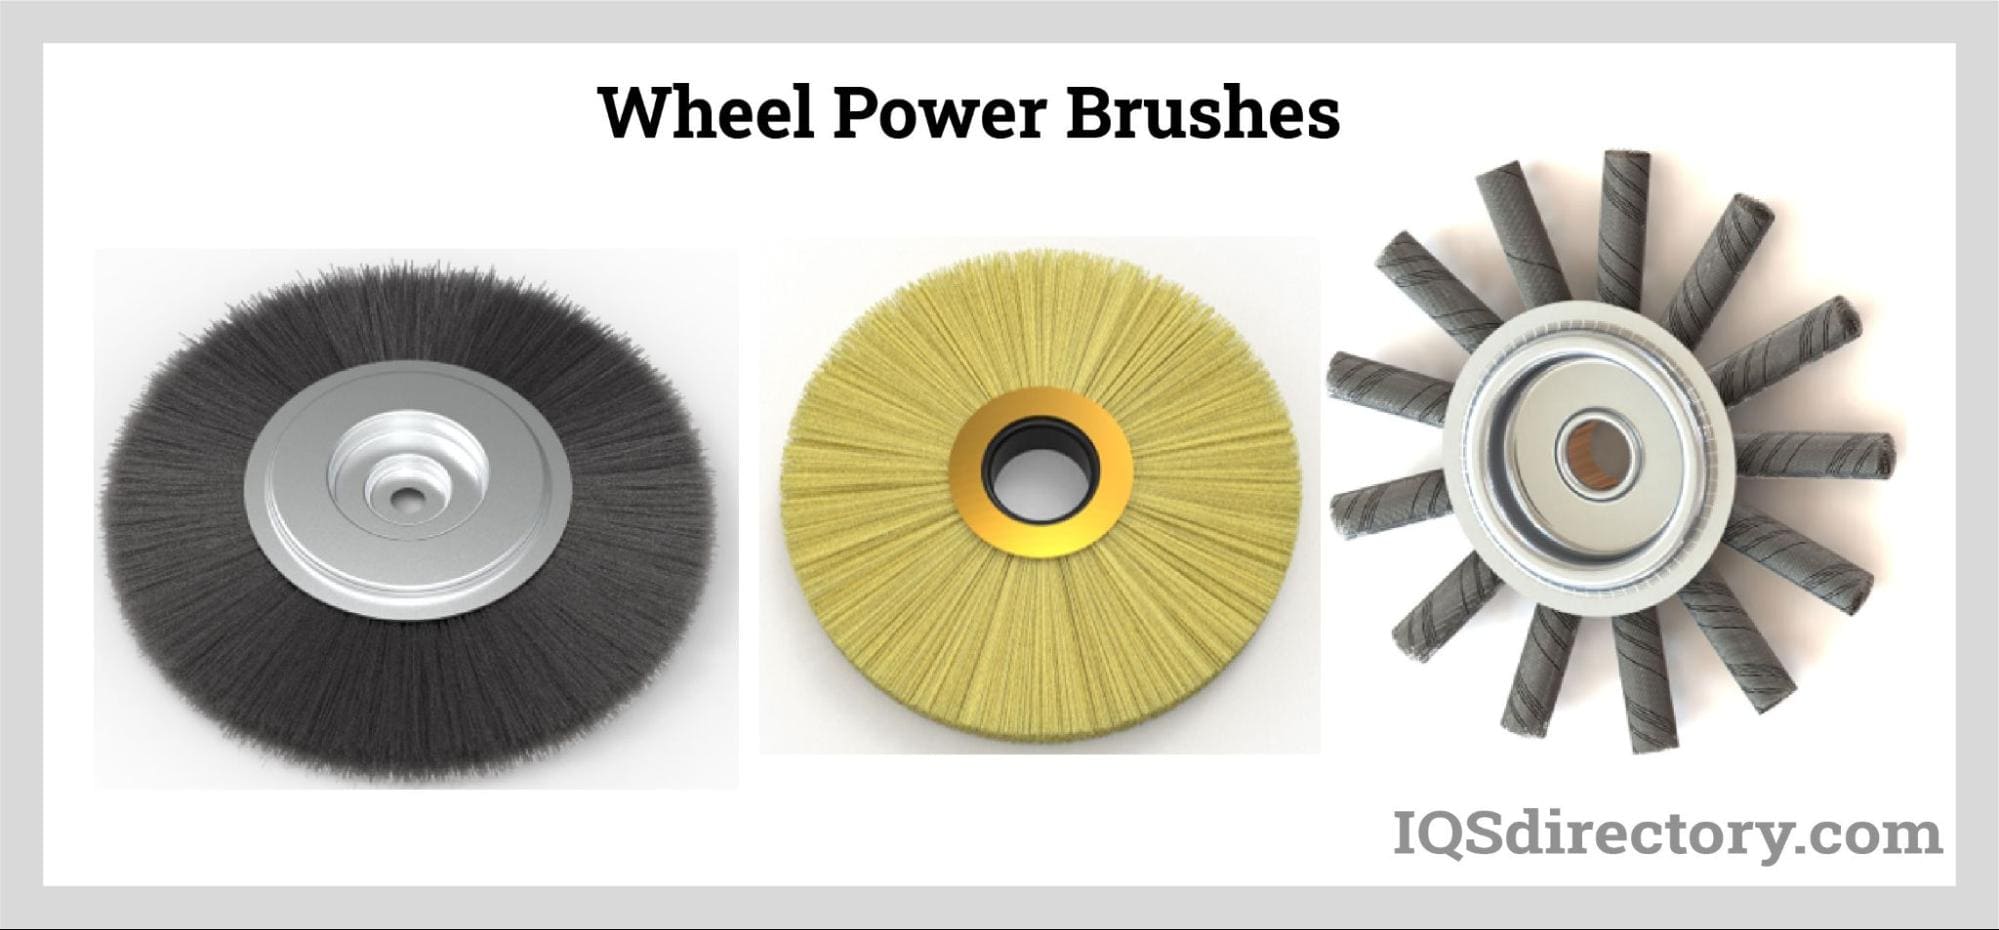 Wheel Power Brushes